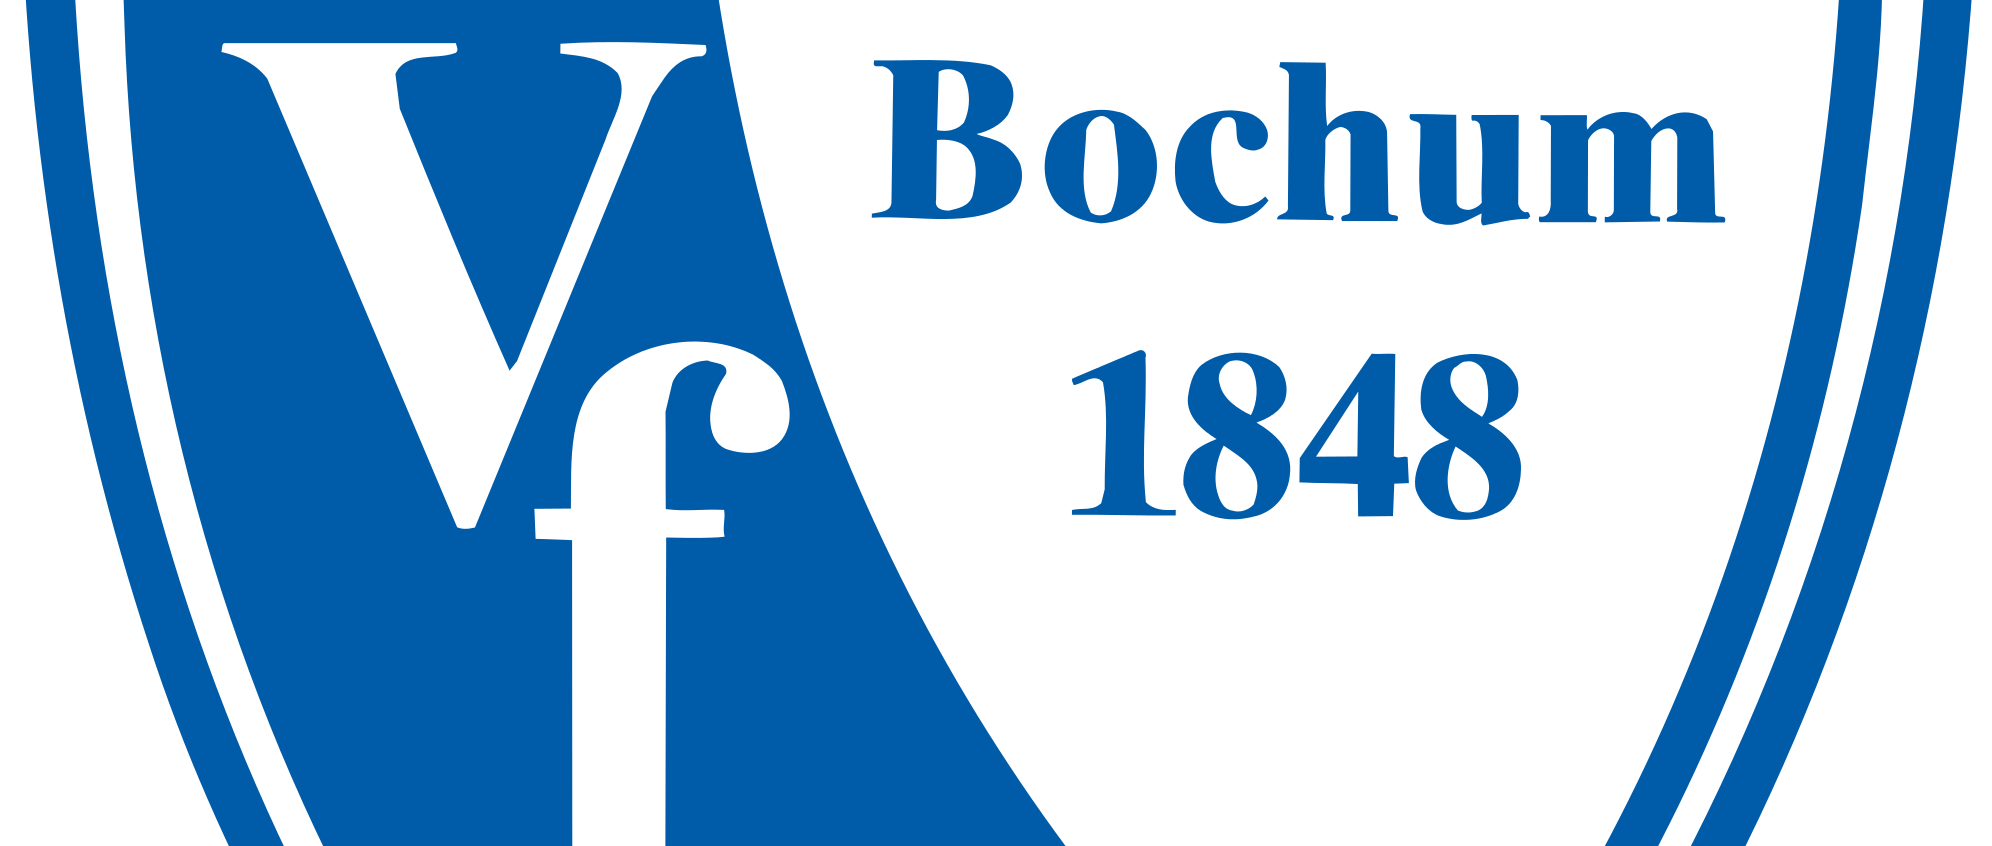 Vfl Bochum Live Stream kostenlos und legal anschauen